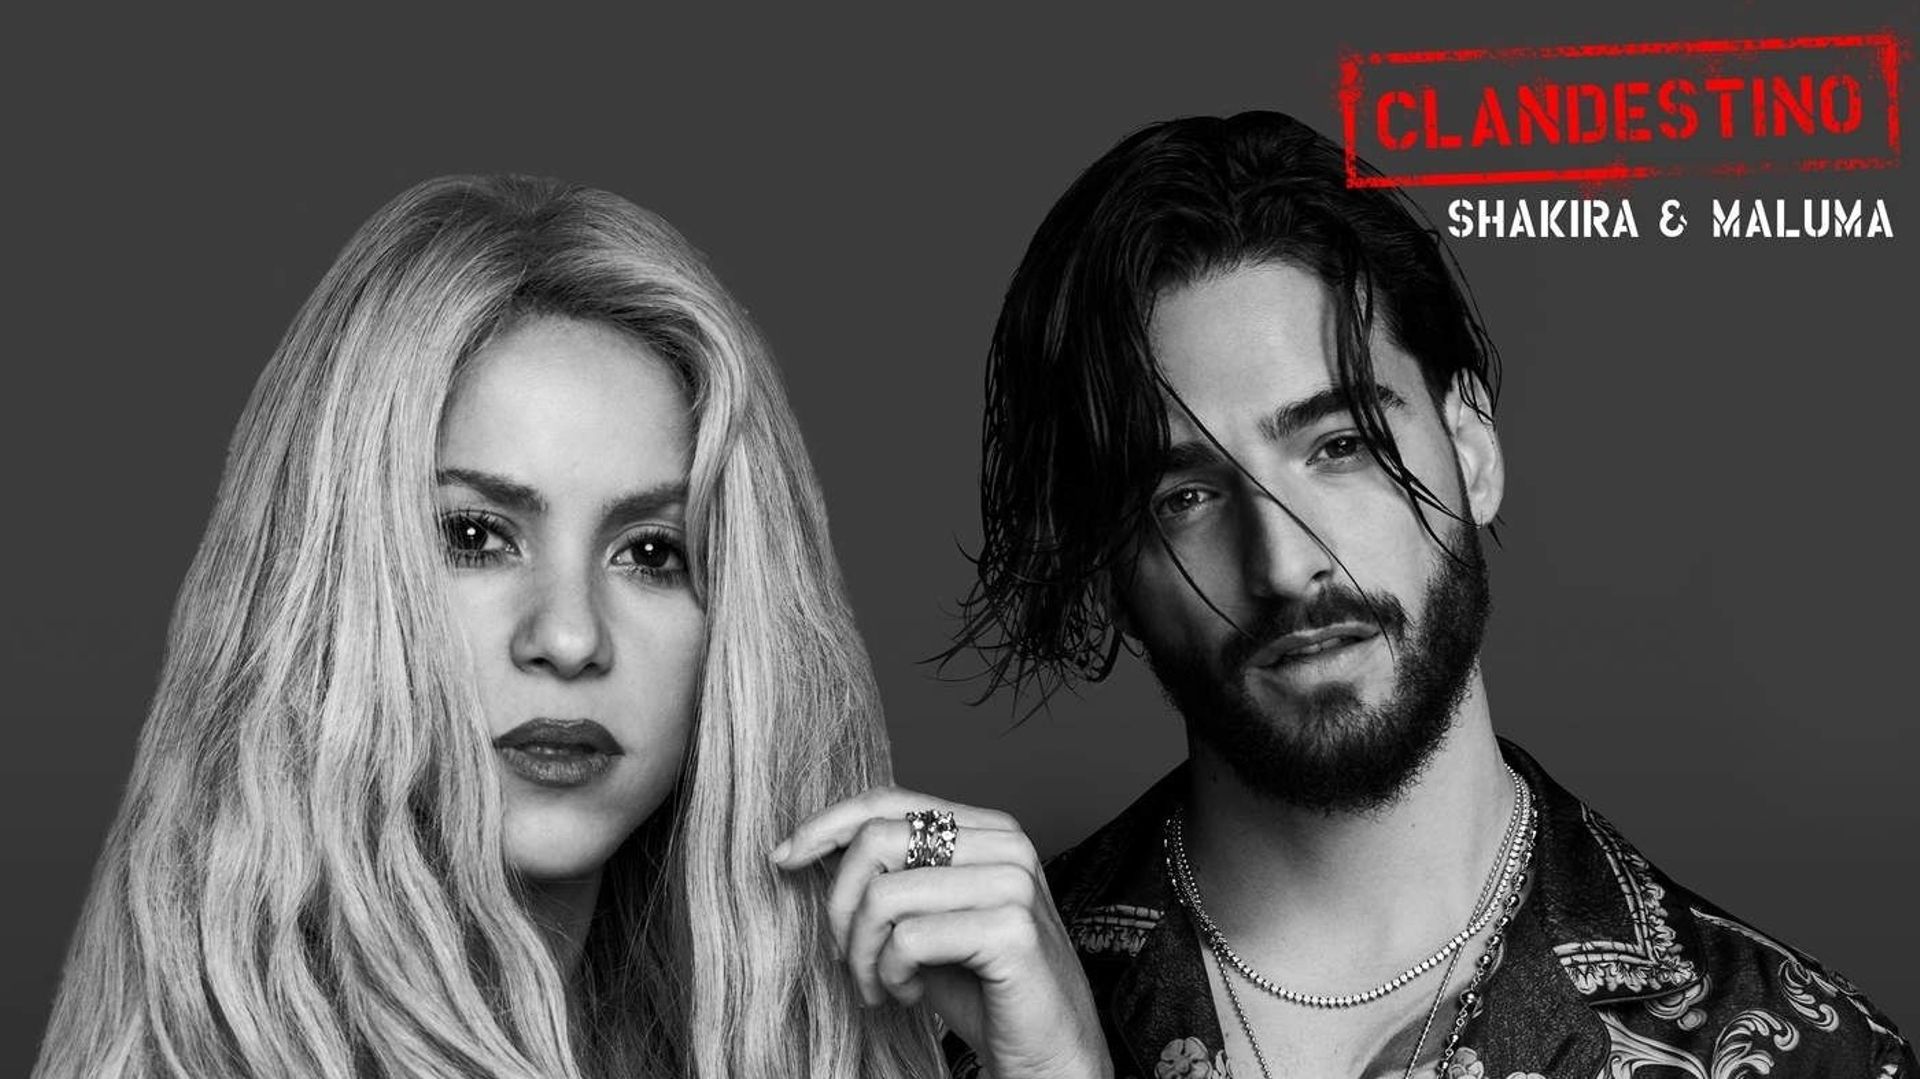 Shakira et Maluma dévoilent leur troisième collaboration intitulée "Clandestino"